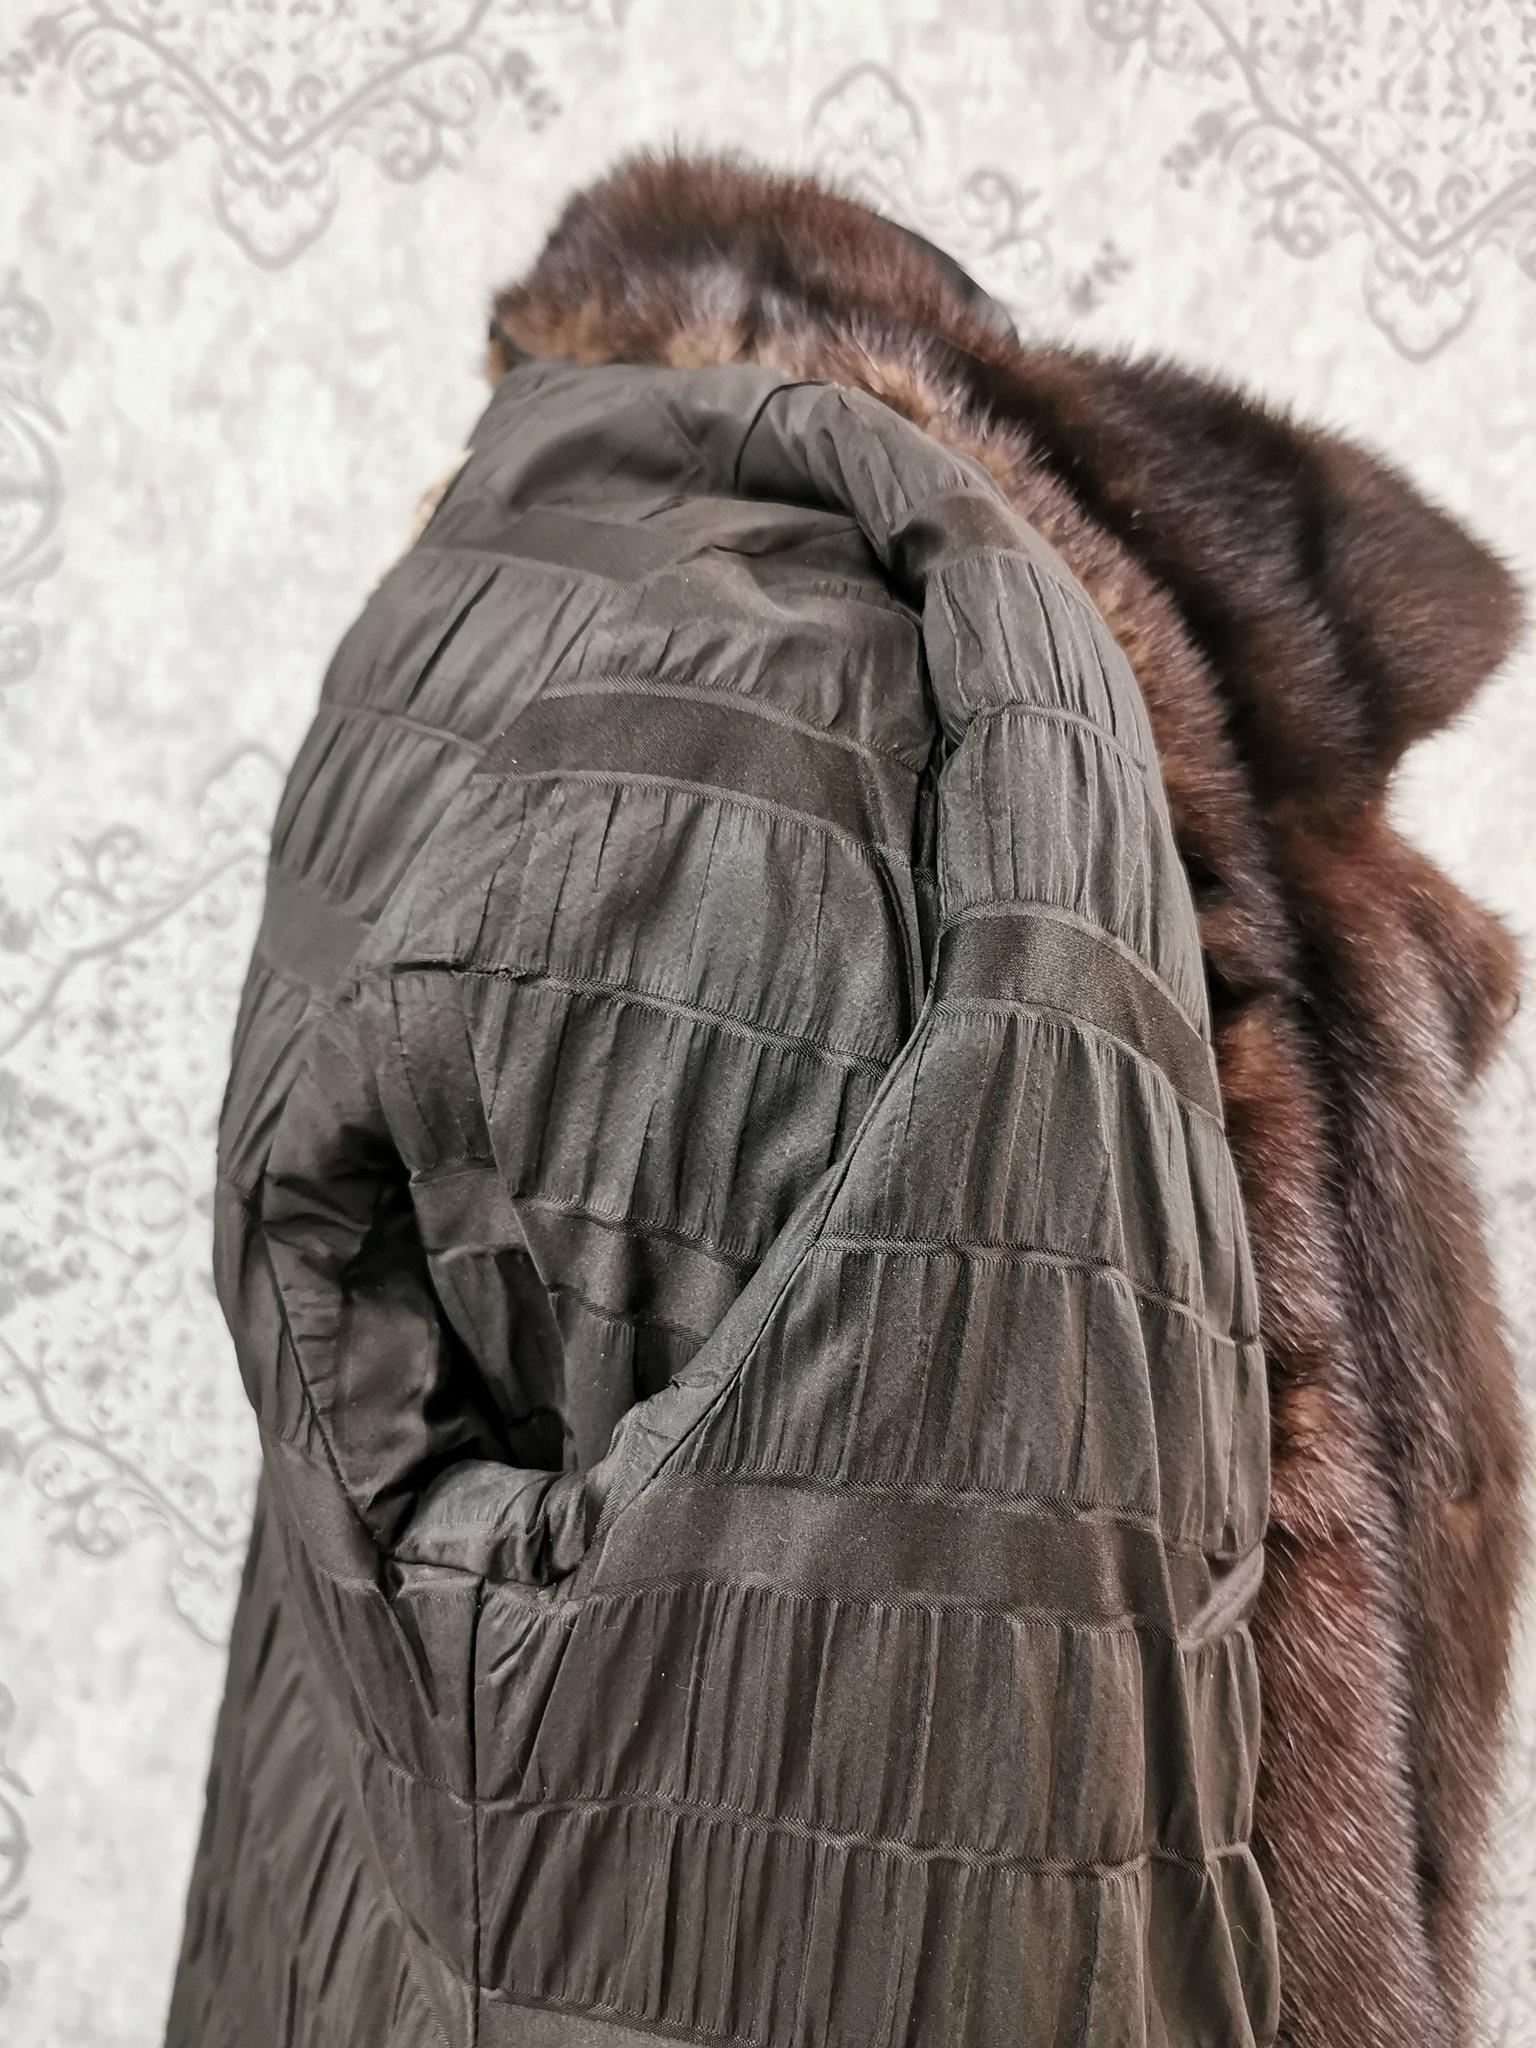 Christian dior / Holt renfrew mink fur coat size 6 For Sale 4